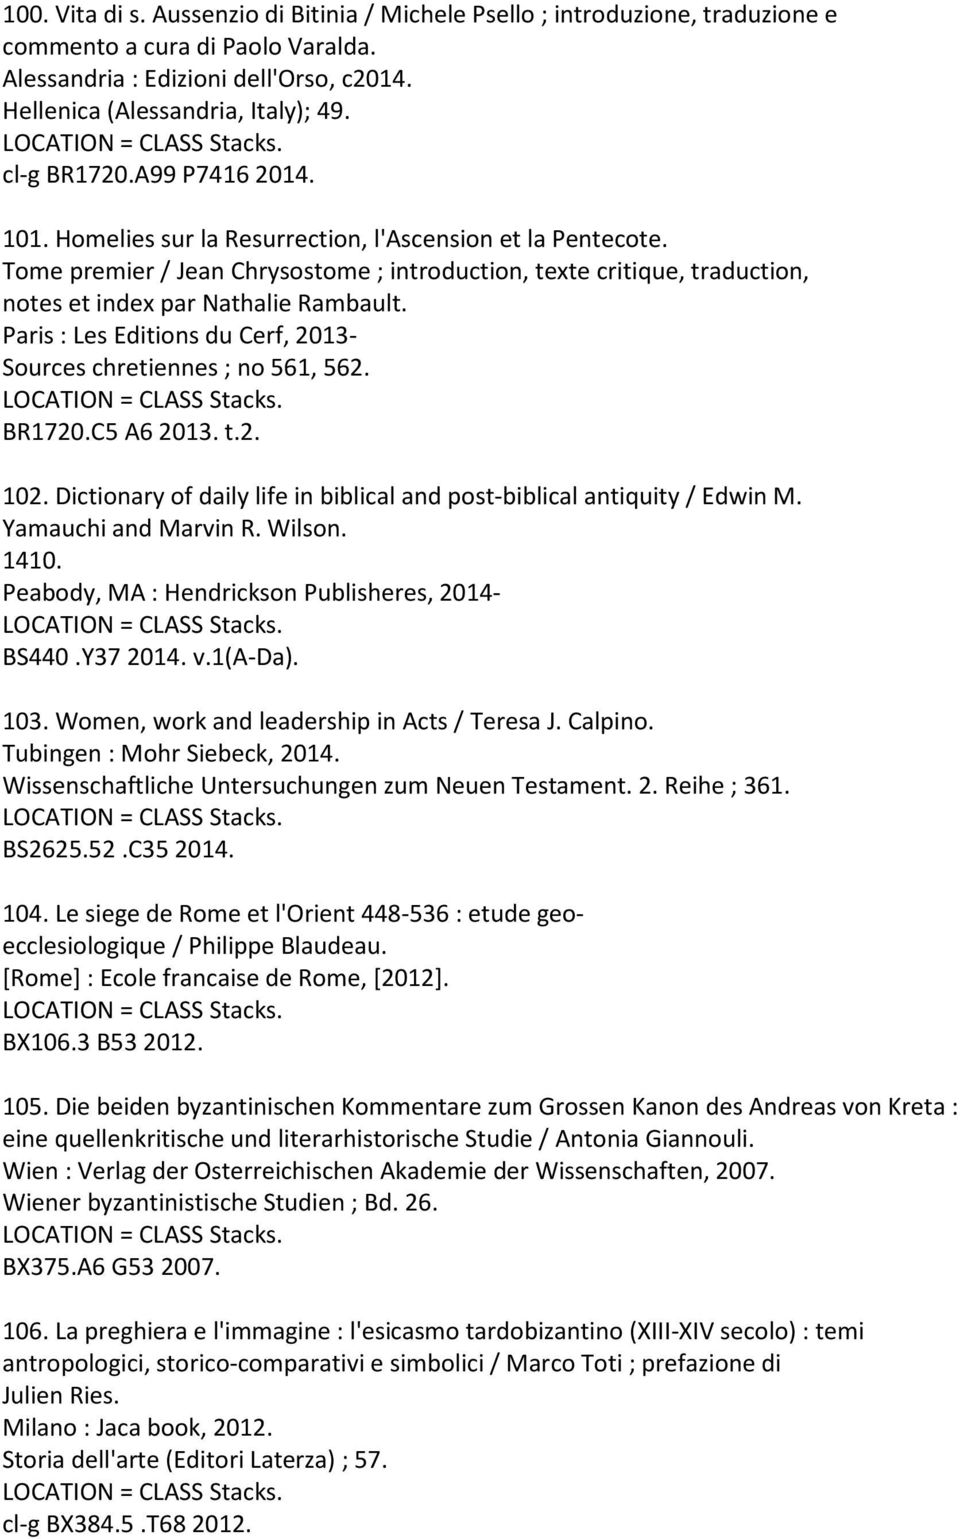 Tome premier / Jean Chrysostome ; introduction, texte critique, traduction, notes et index par Nathalie Rambault. Paris : Les Editions du Cerf, 2013- Sources chretiennes ; no 561, 562. BR1720.